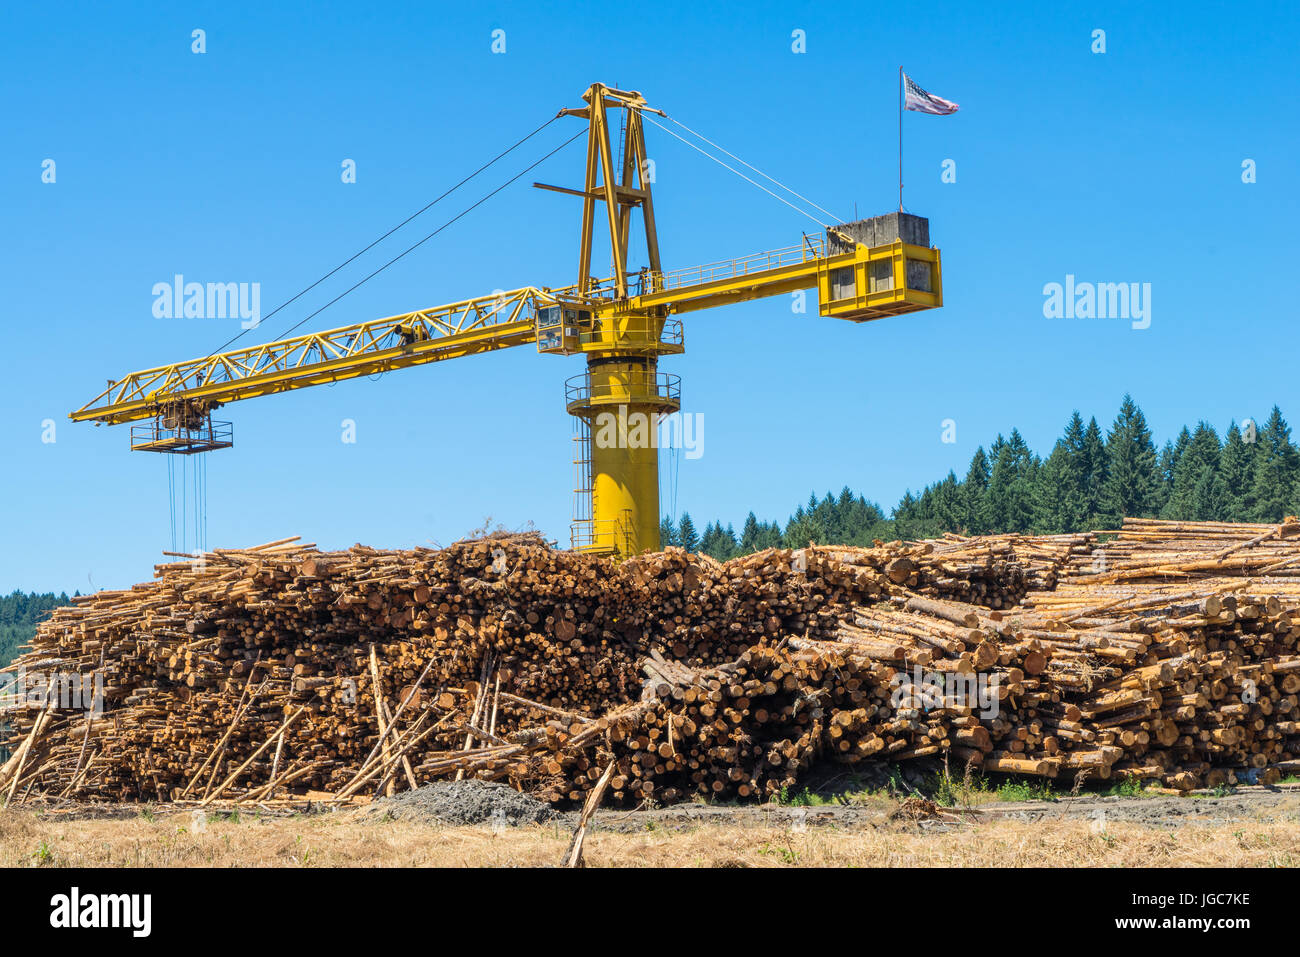 Crane le traitement d'un stock important de grumes coupées à une usine d'exploitation forestière Banque D'Images